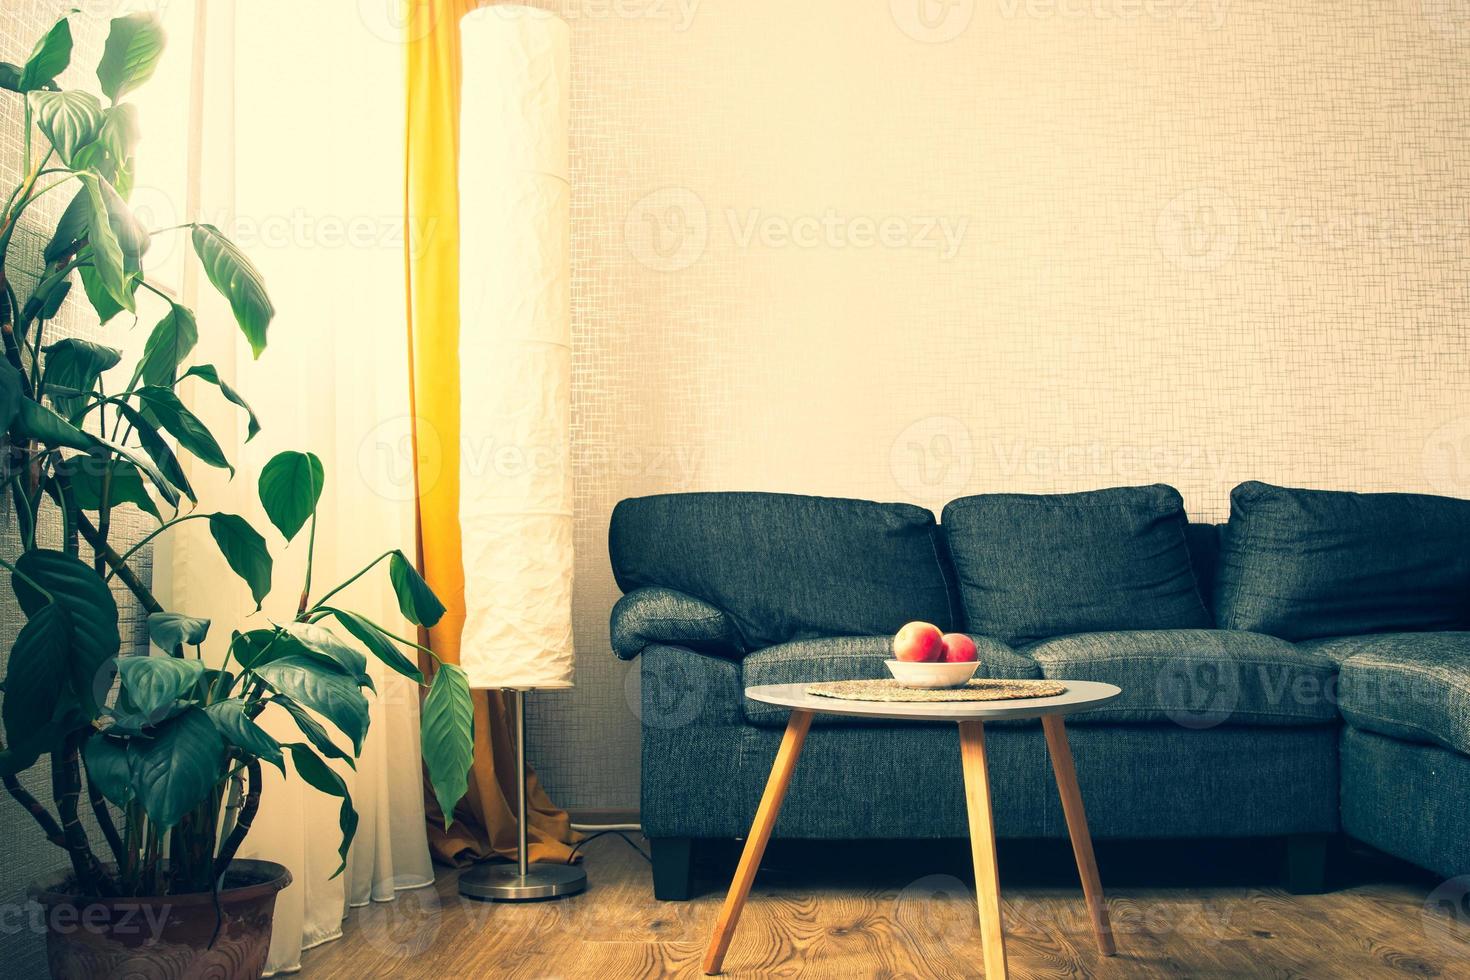 gemütliches wohnungswohnzimmer mit sofa und gelben kissen und stilvollem tisch mit buch von blume und fenster mit blauem licht draußen im winter. Buch am frühen Abend gelesen. Wand kopieren foto